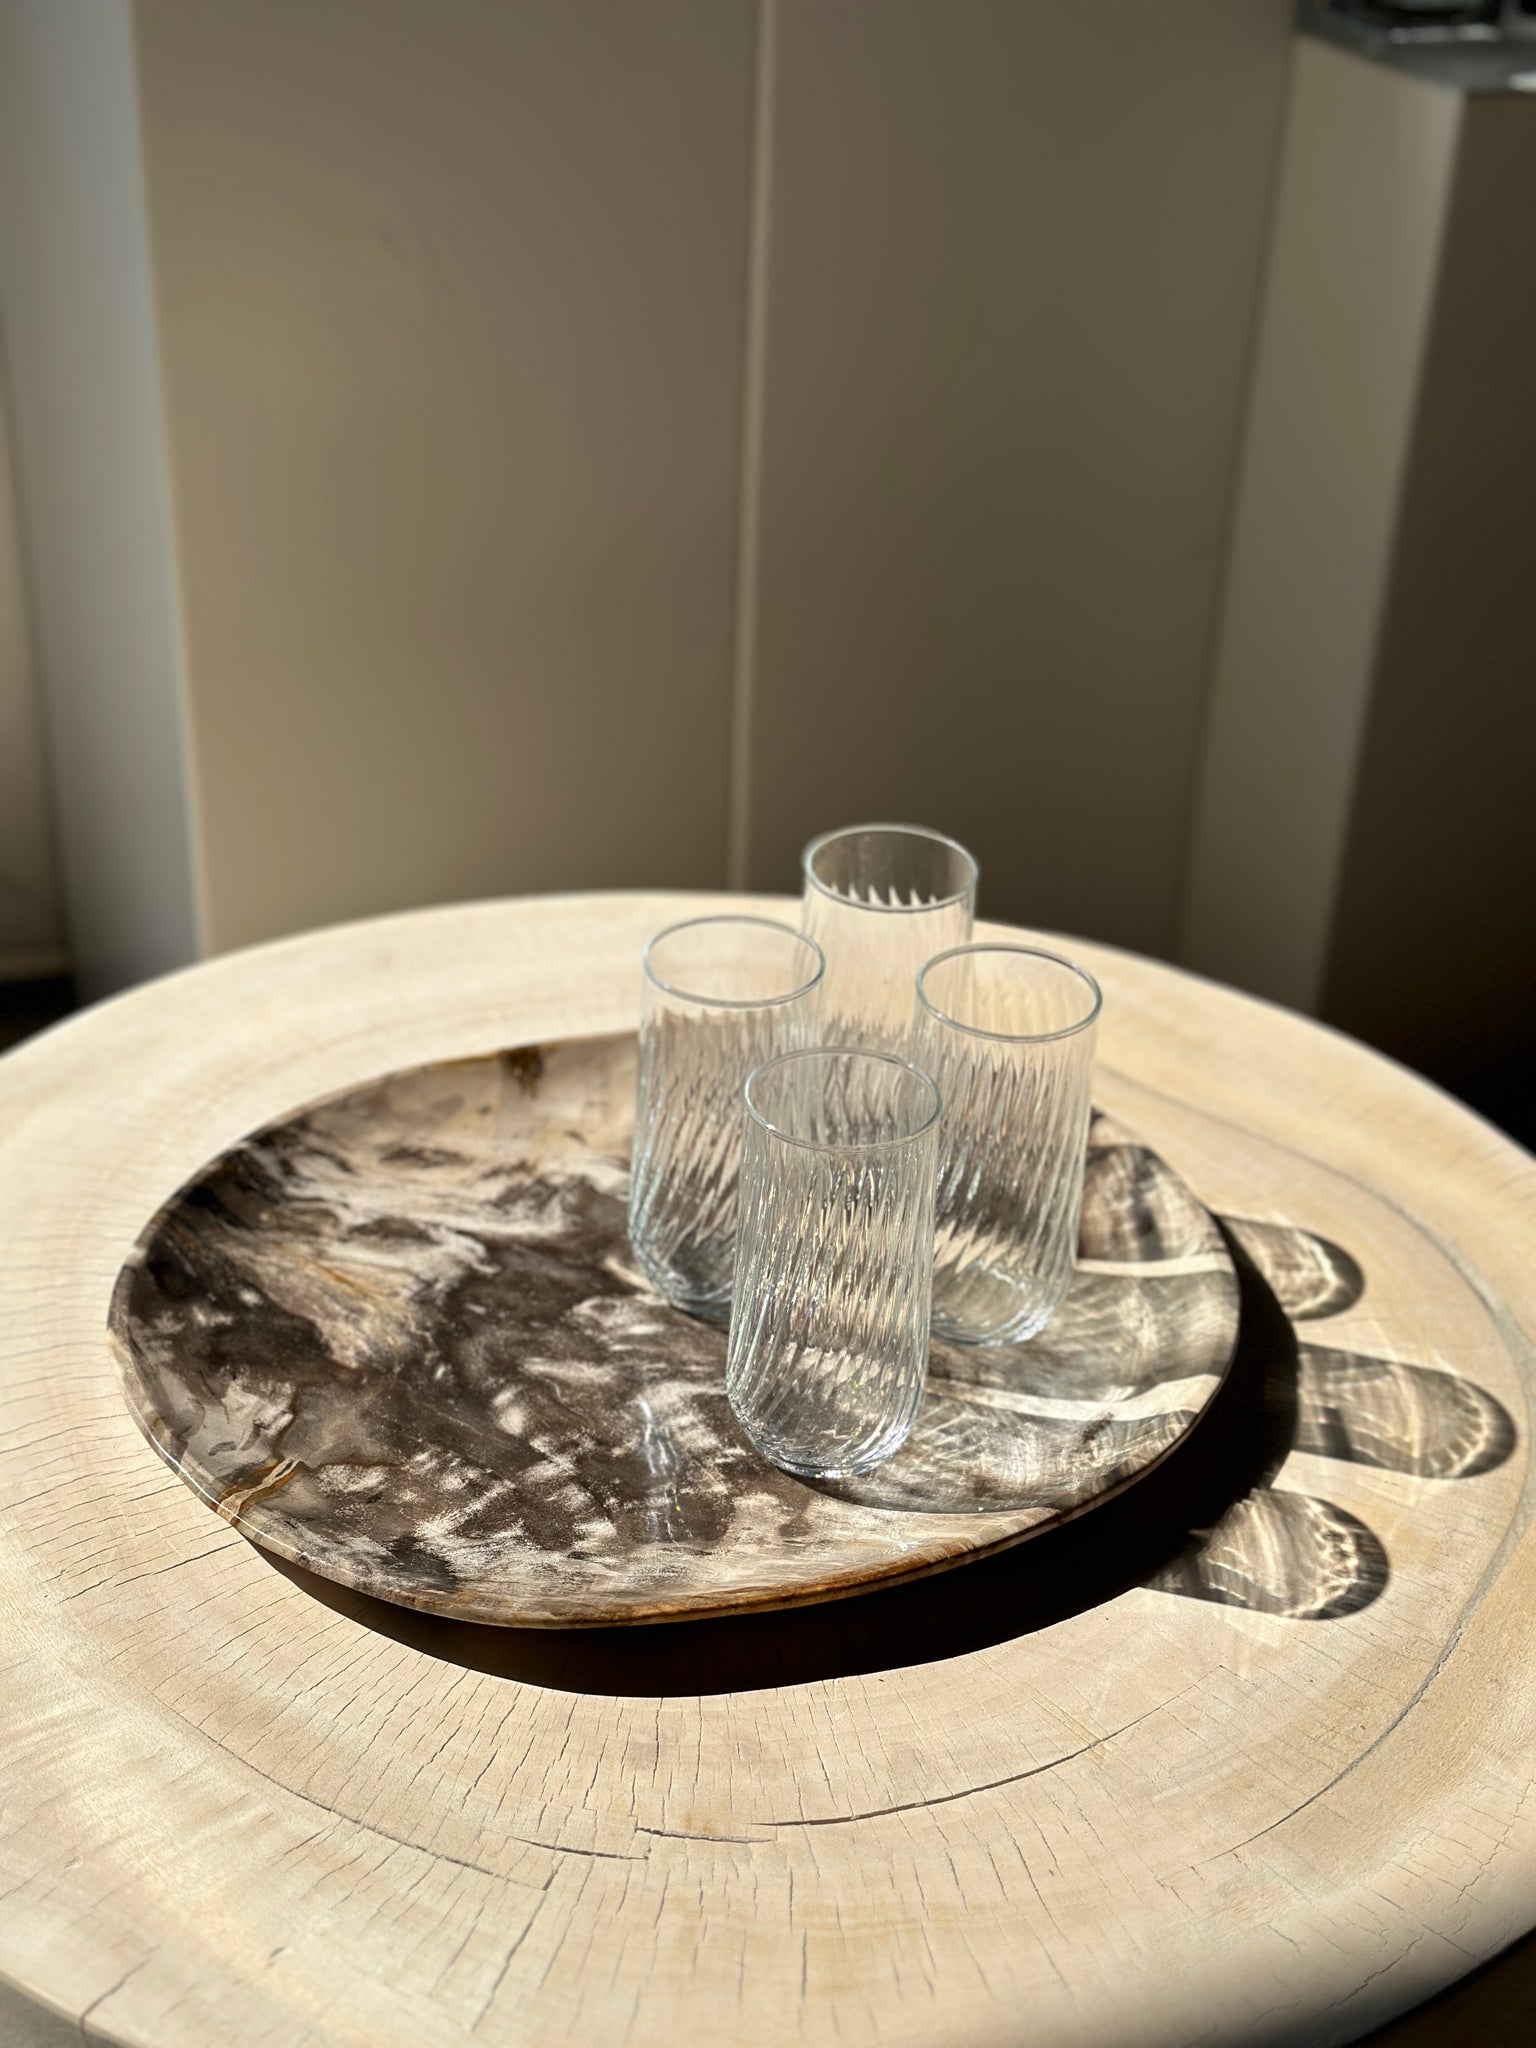 Verres à eau transparents - Lot de 4 - L'INATELIER design et artisanat